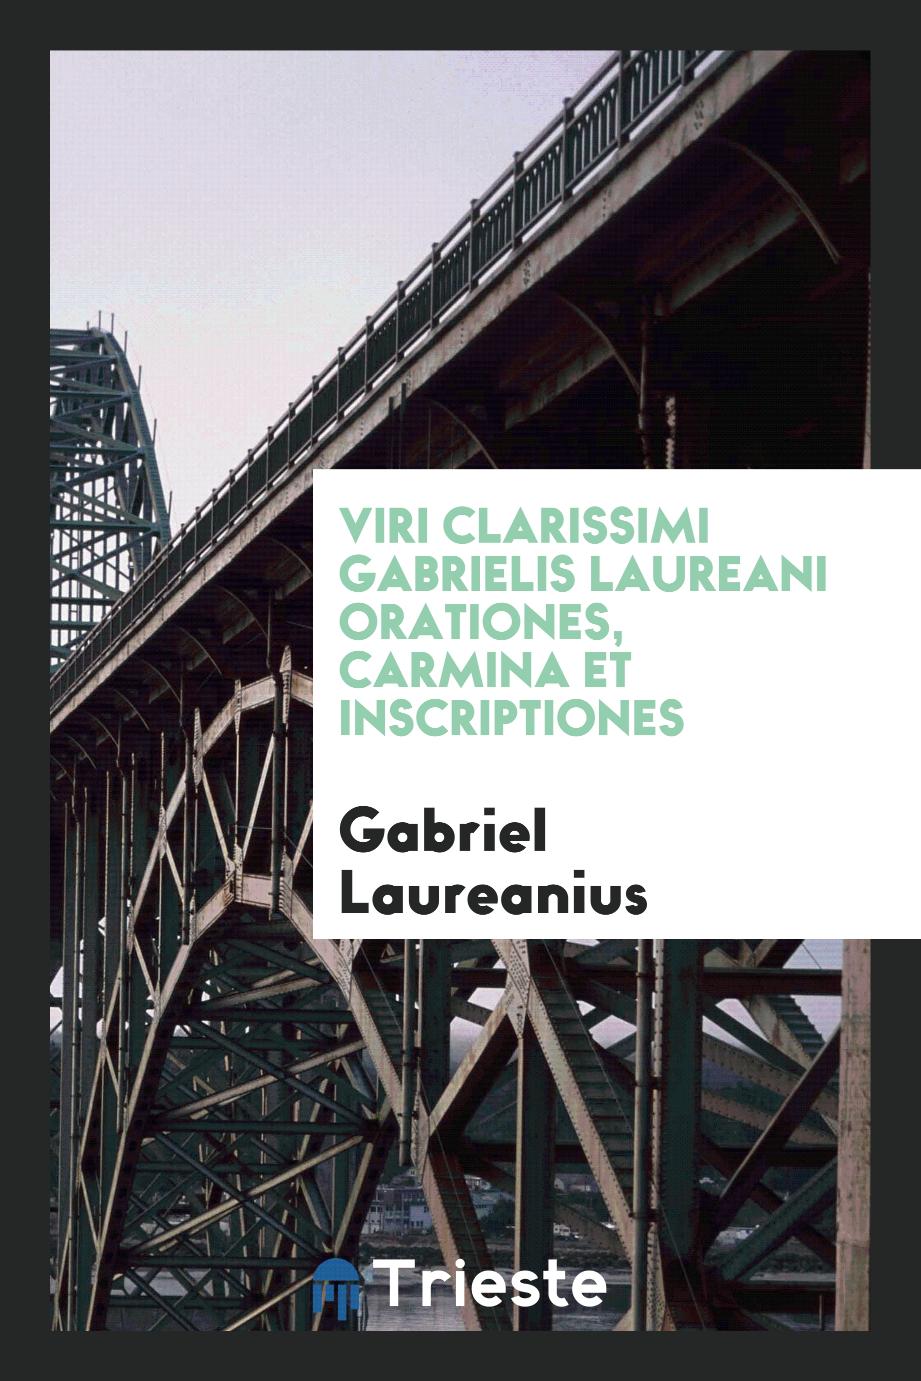 Gabriel Laureanius - Viri Clarissimi Gabrielis Laureani Orationes, Carmina et Inscriptiones